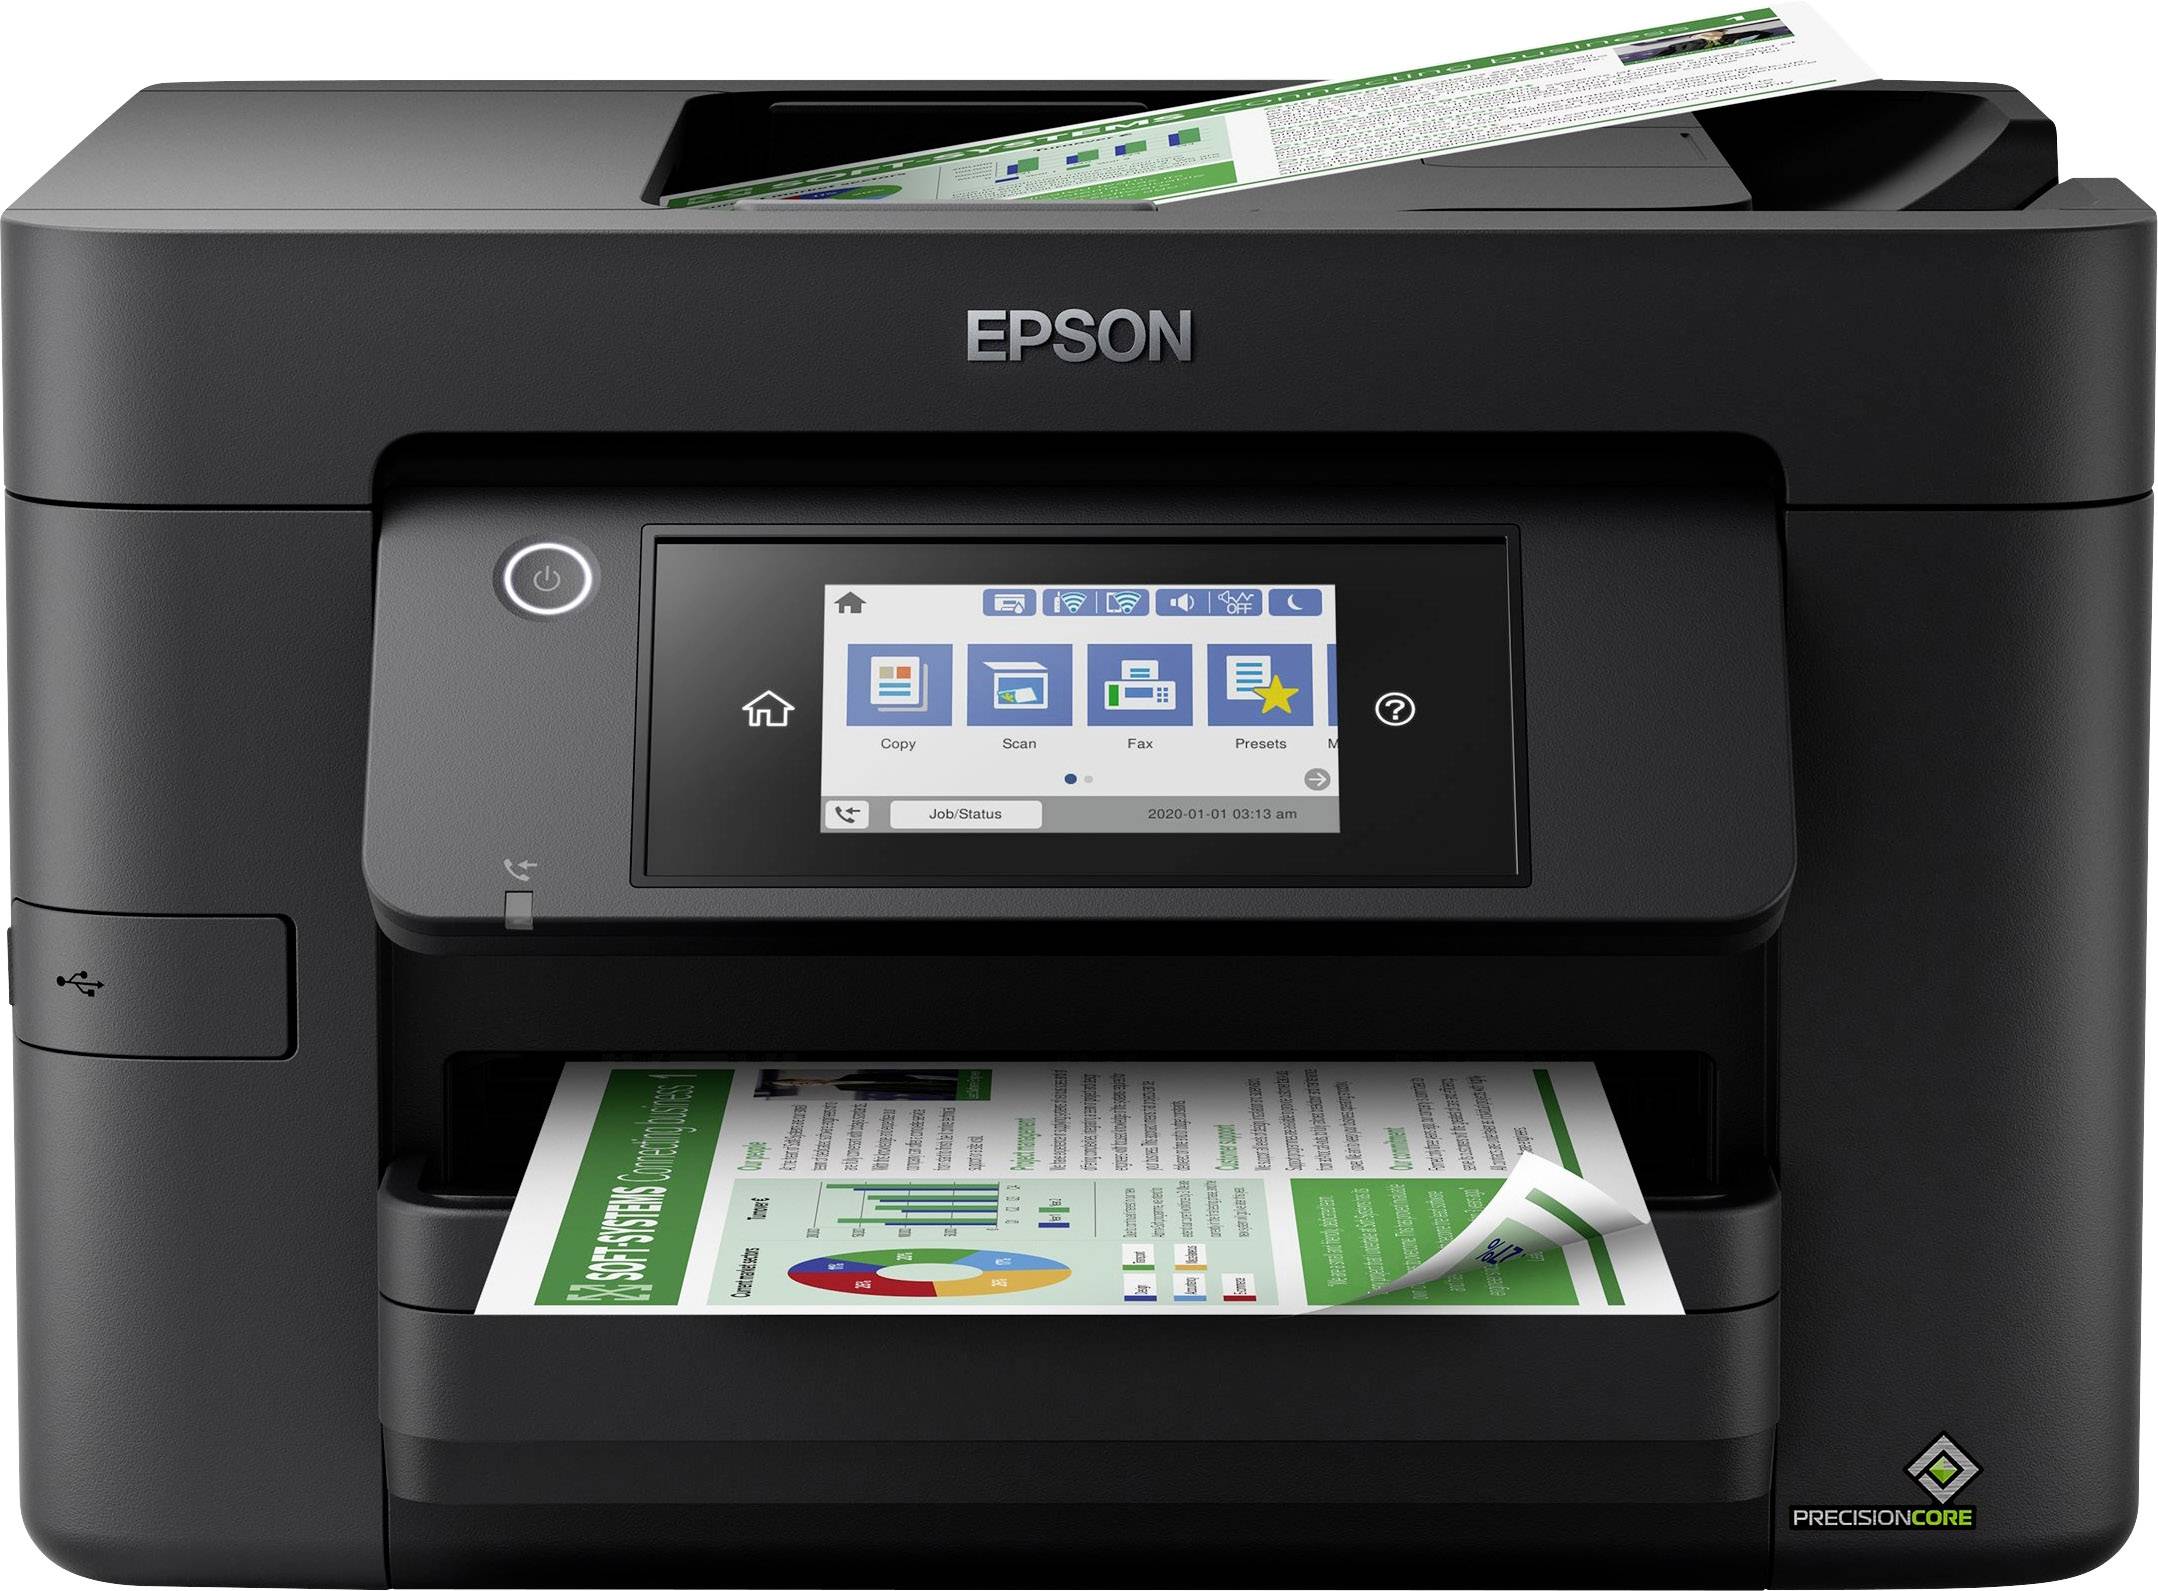 Epson WorkForce Pro WF-4820DWF Tintenstrahl-Multifunktionsdrucker Duplex, kaufen Scanner, Drucker, Fax Kopierer, A4 USB, LAN